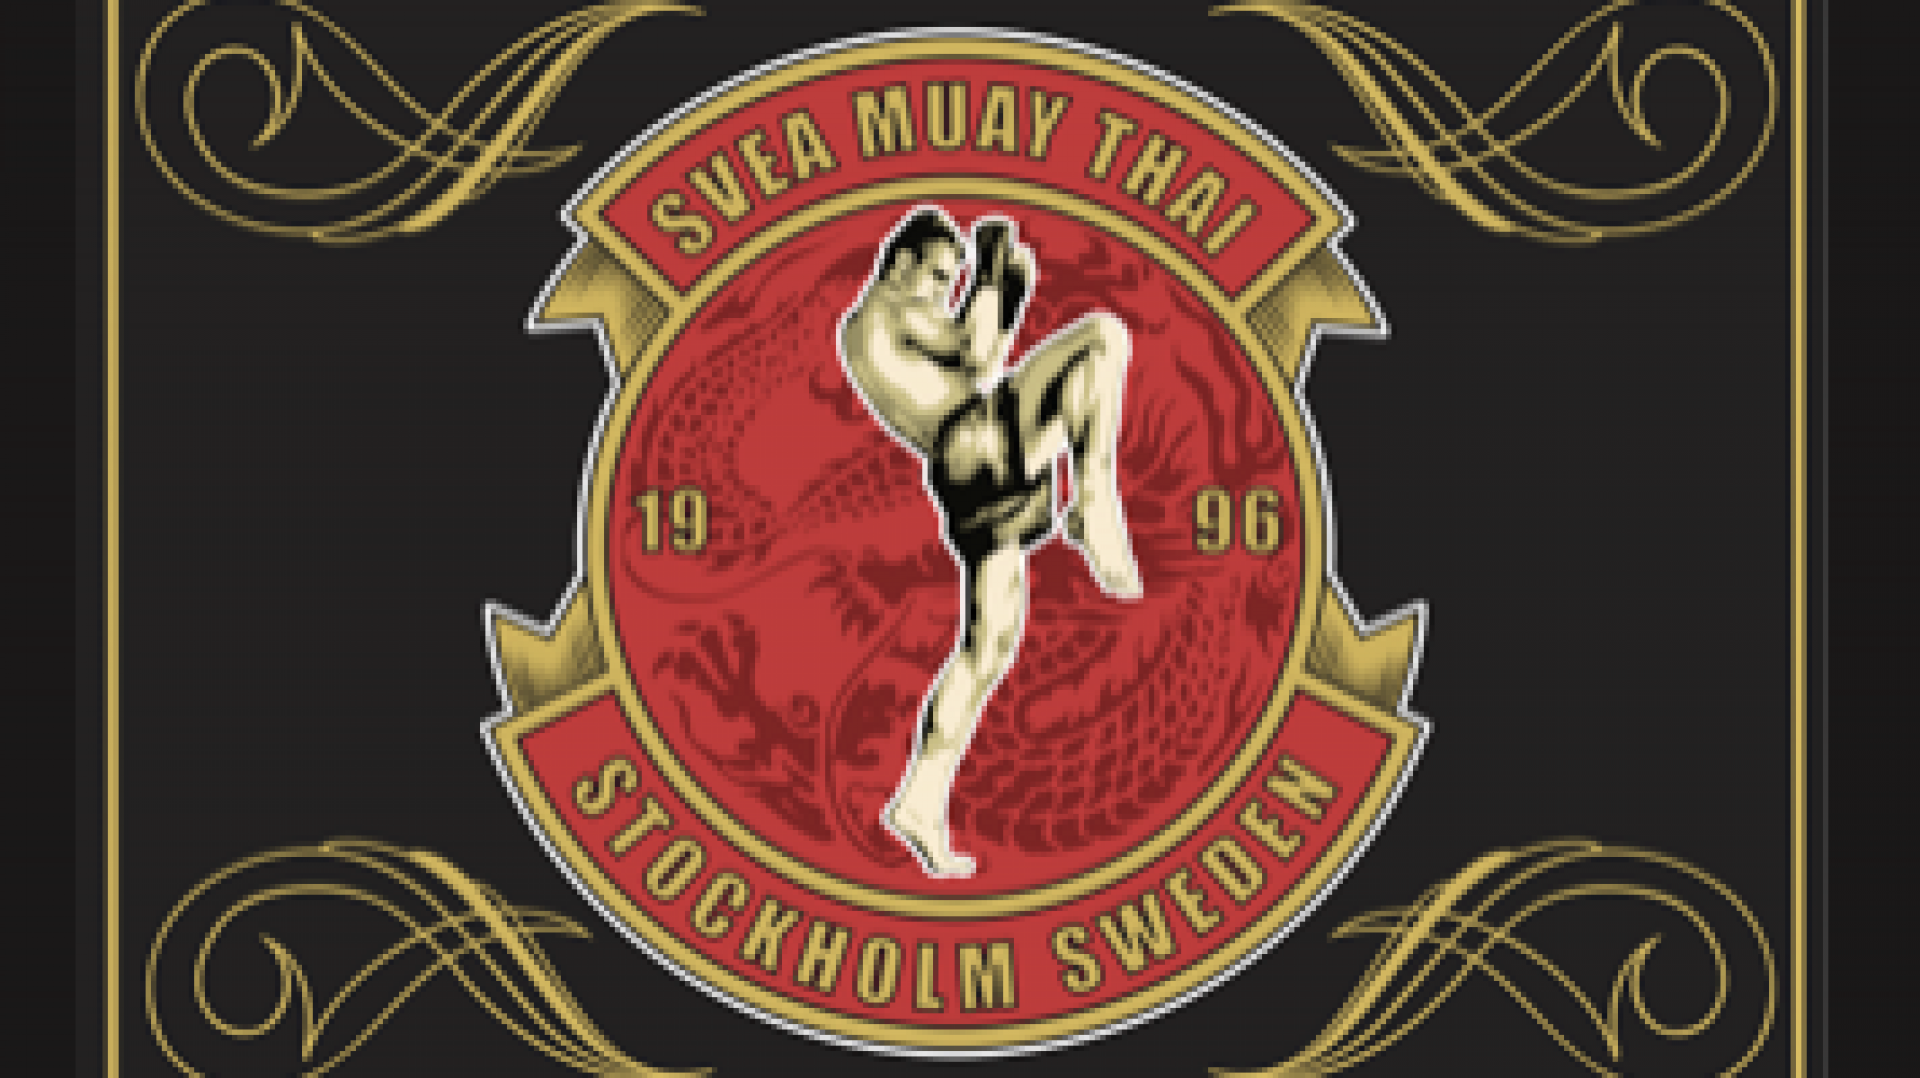 Svea Muay Thai